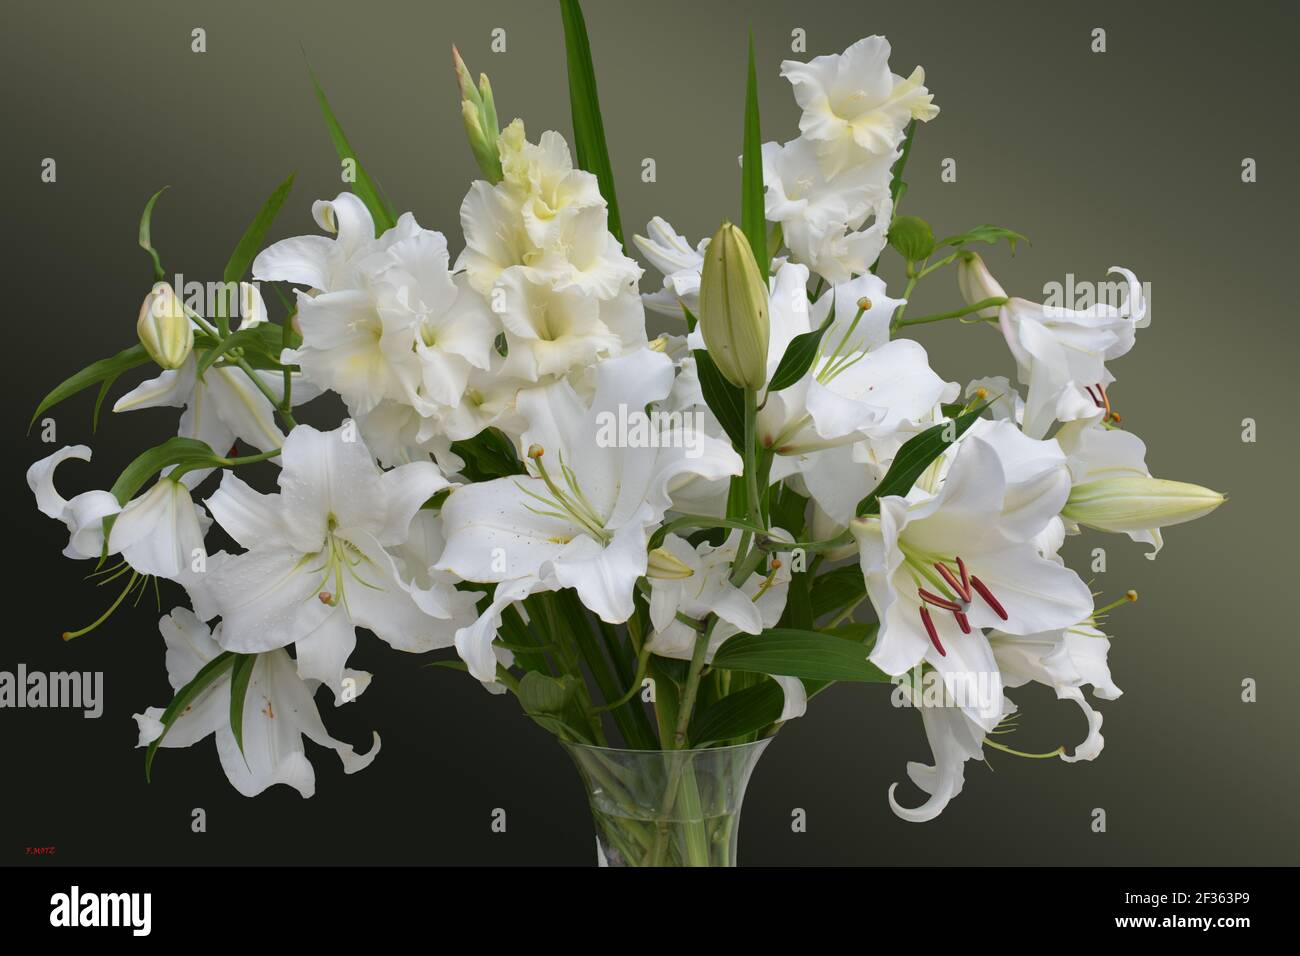 Impression bouquet de lys blanc Stock Photo